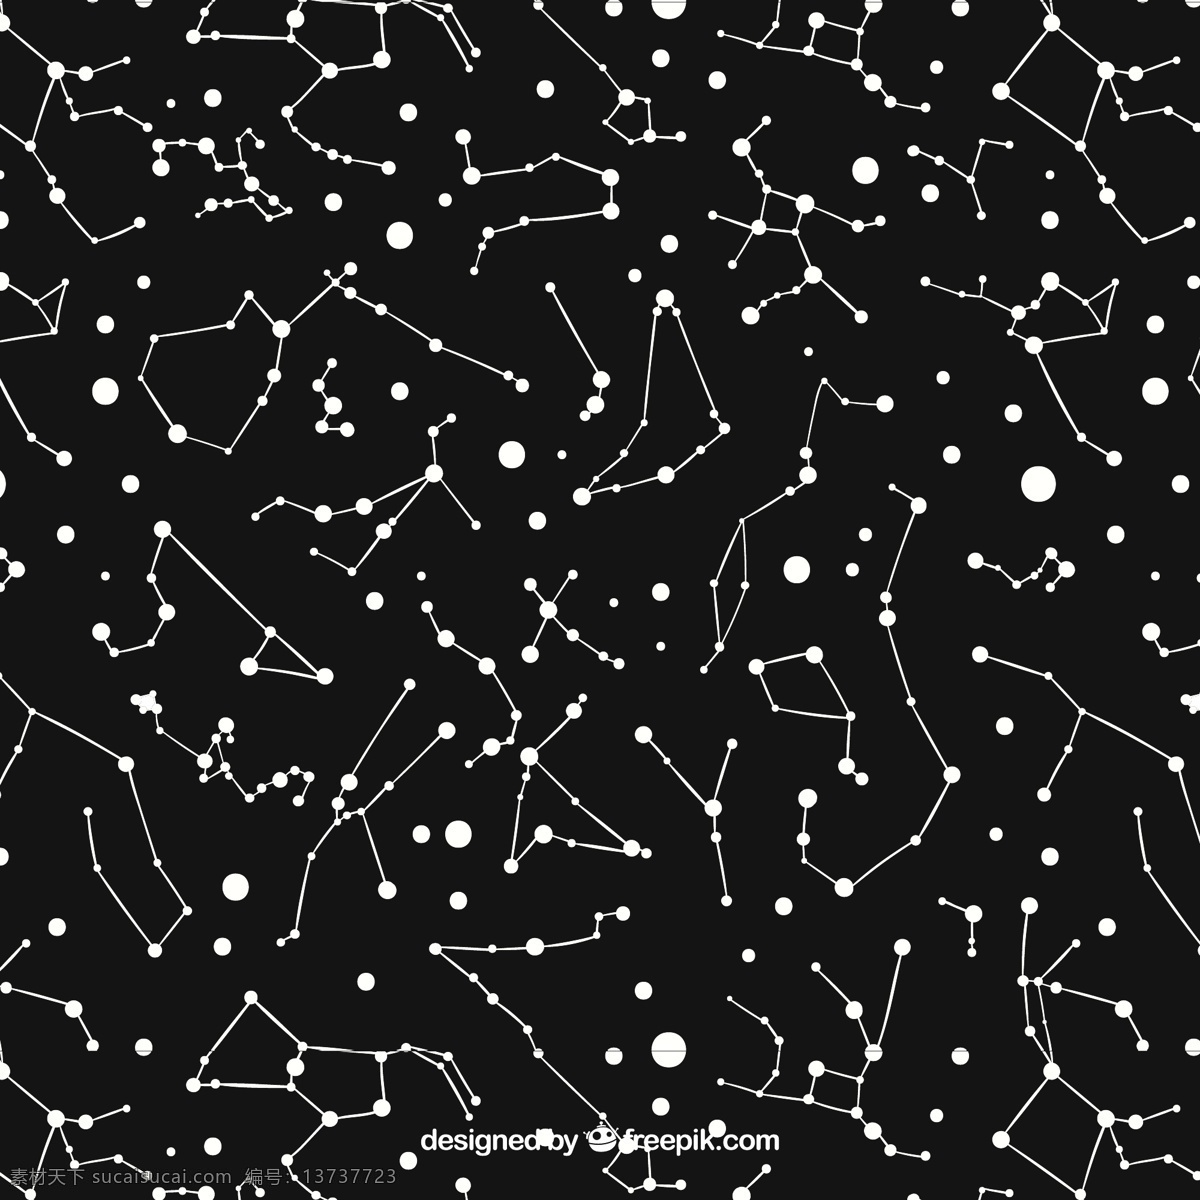 黑色 星座 图案 背景 模式 星星 地图 天空 空间 黑色背景 夜晚 星系 无缝模式 宇宙 无缝 夜空